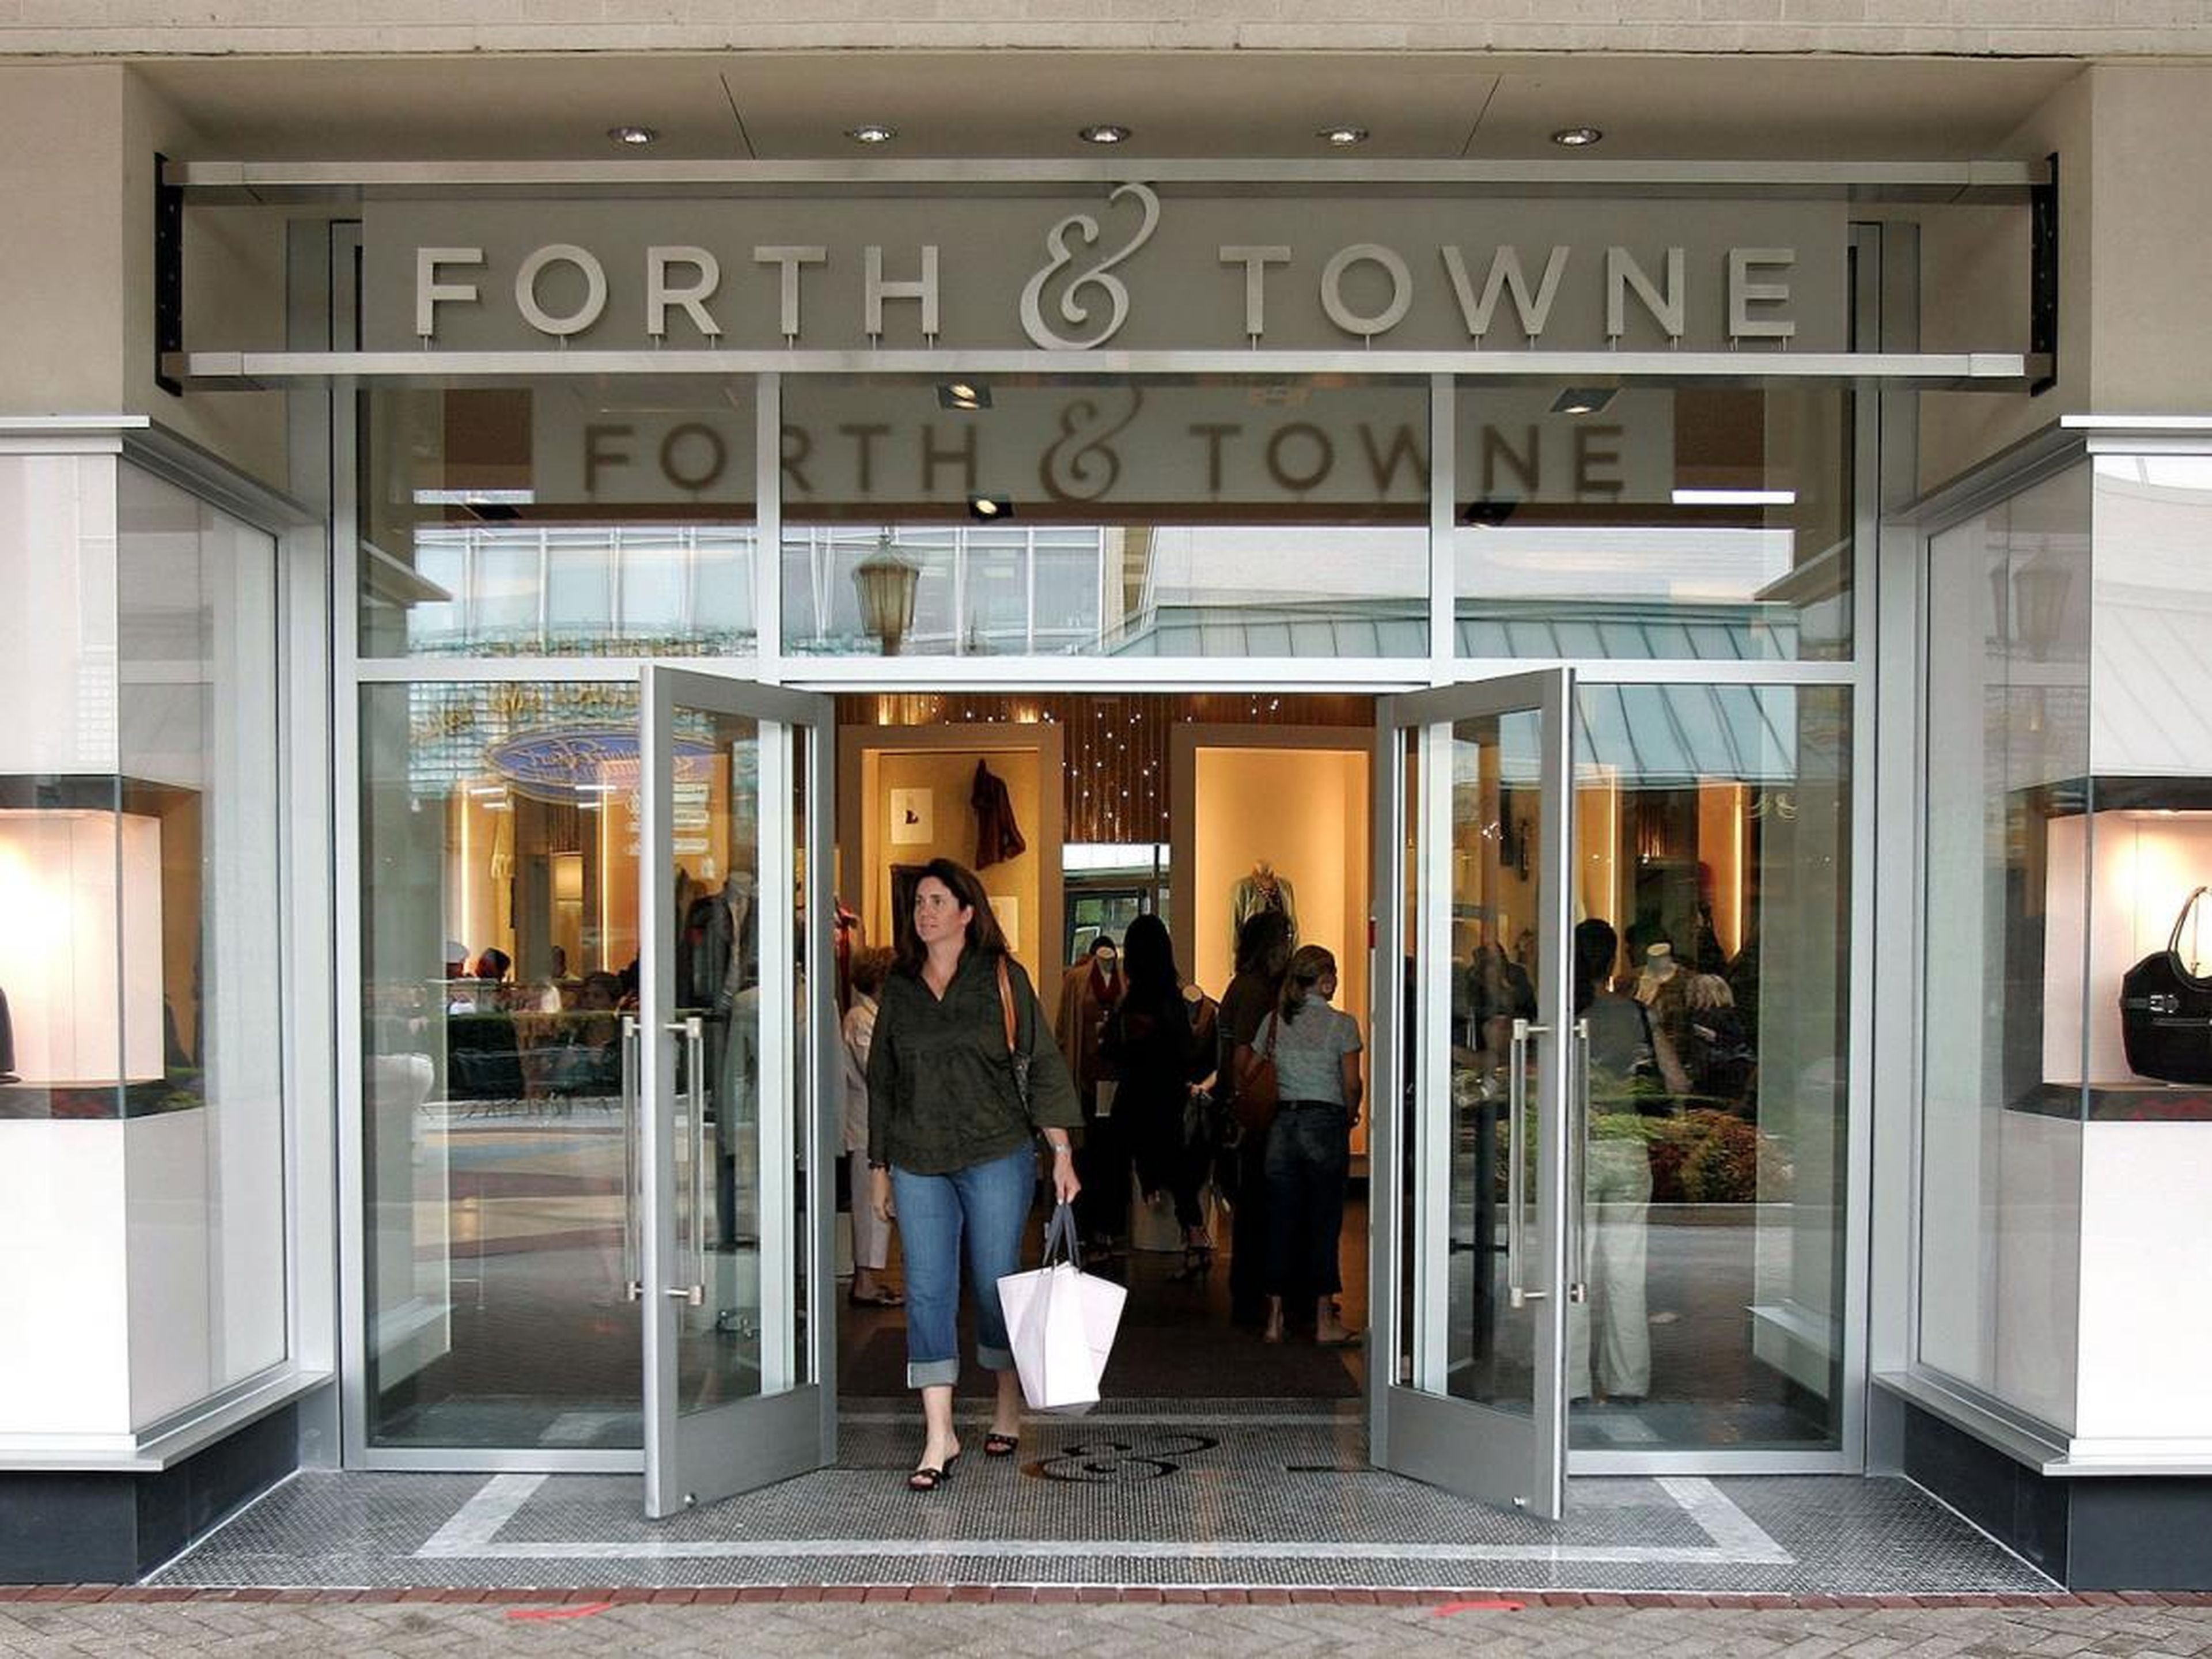 En 2007, Gap cerró Forth & Towne 18 meses después de lanzarlo. La tienda estaba destinada a mujeres de 35 años o más.